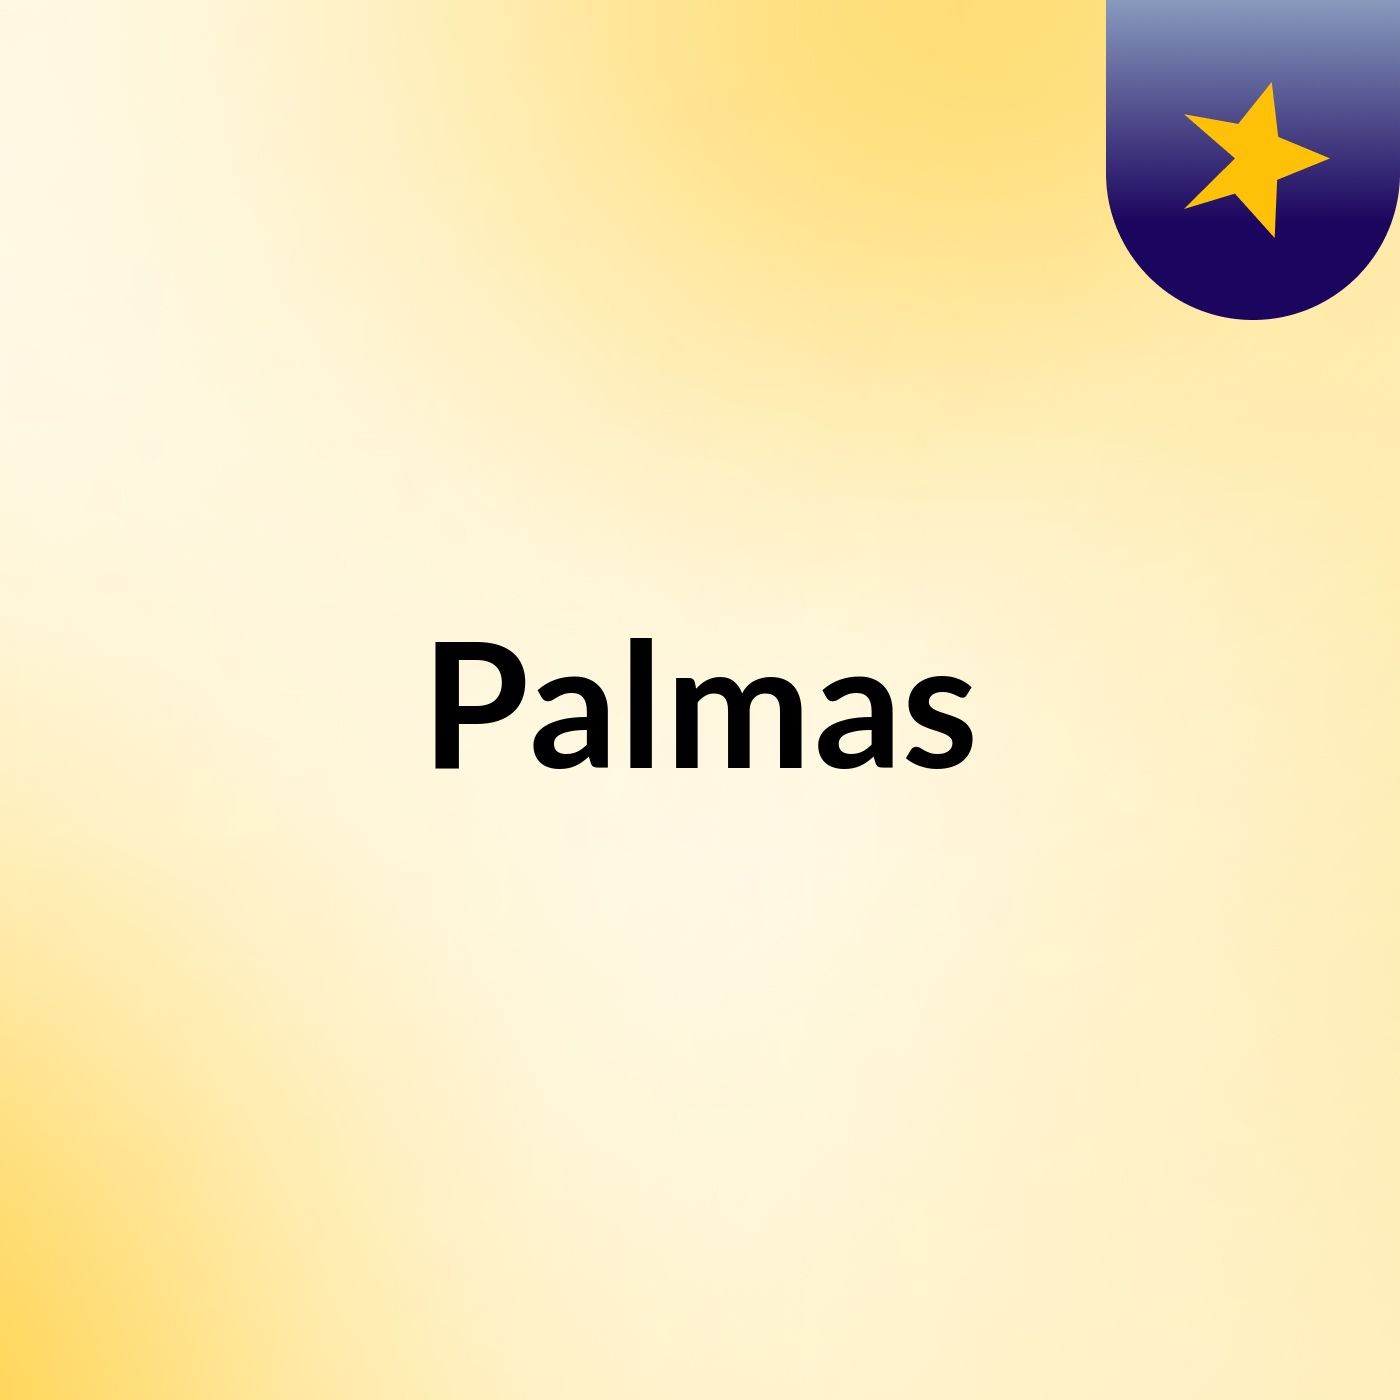 Palmas